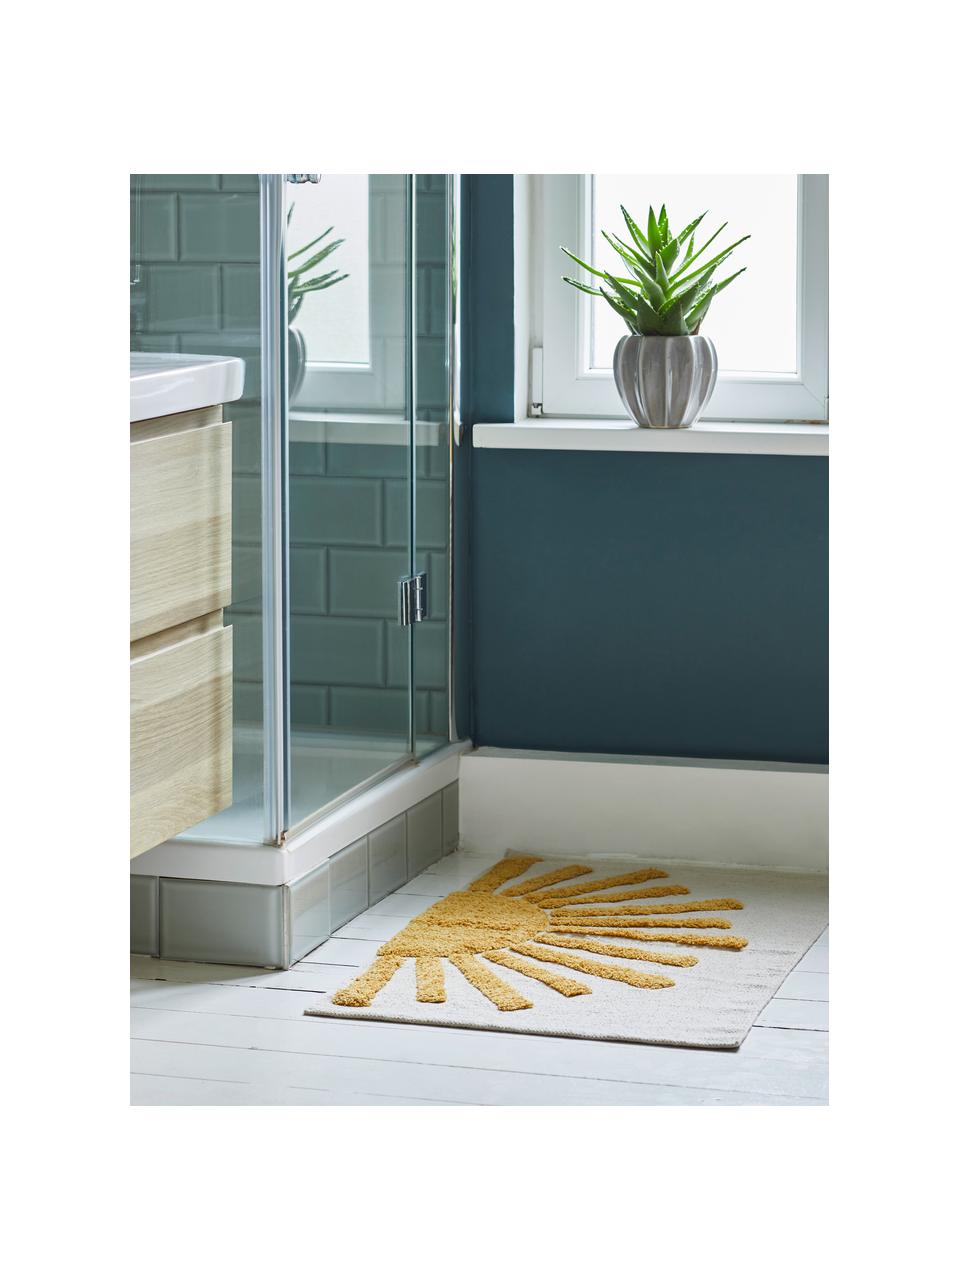 Koupelnový kobereček Sun, 100 % bavlna, Světle béžová, hořčicově žlutá, Š 60 cm, D 90 cm